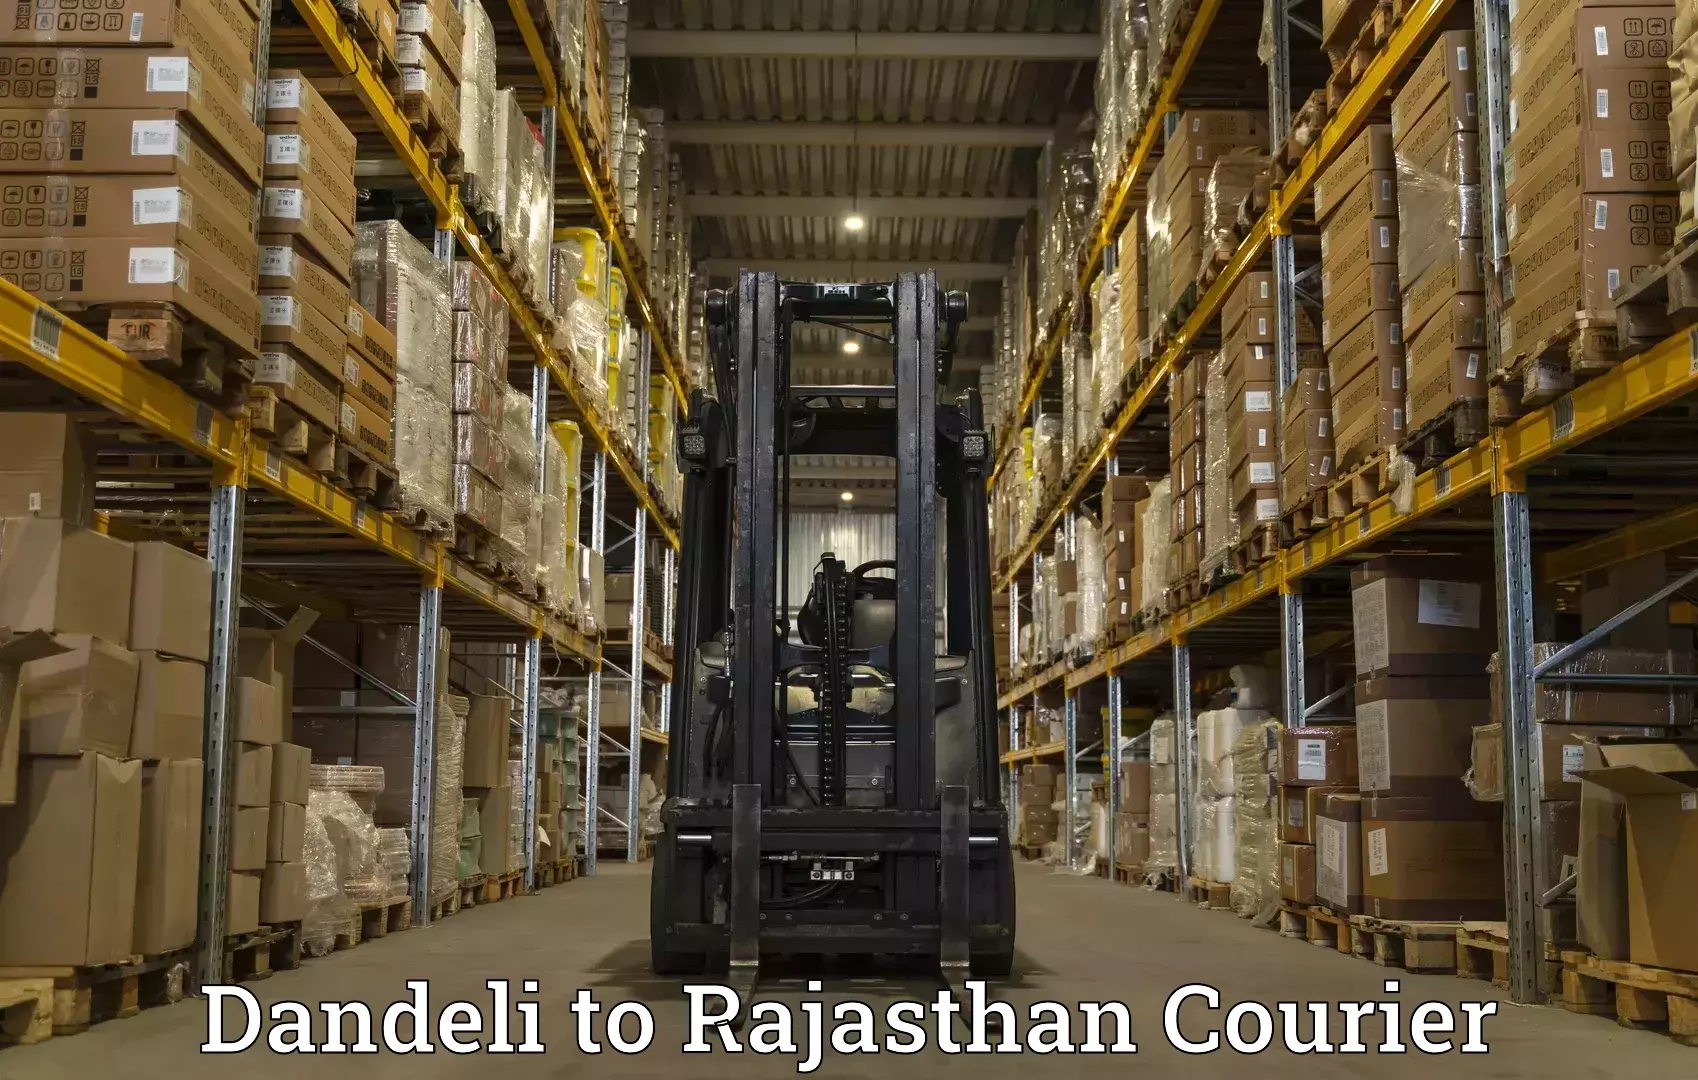 High-priority parcel service Dandeli to Nagar